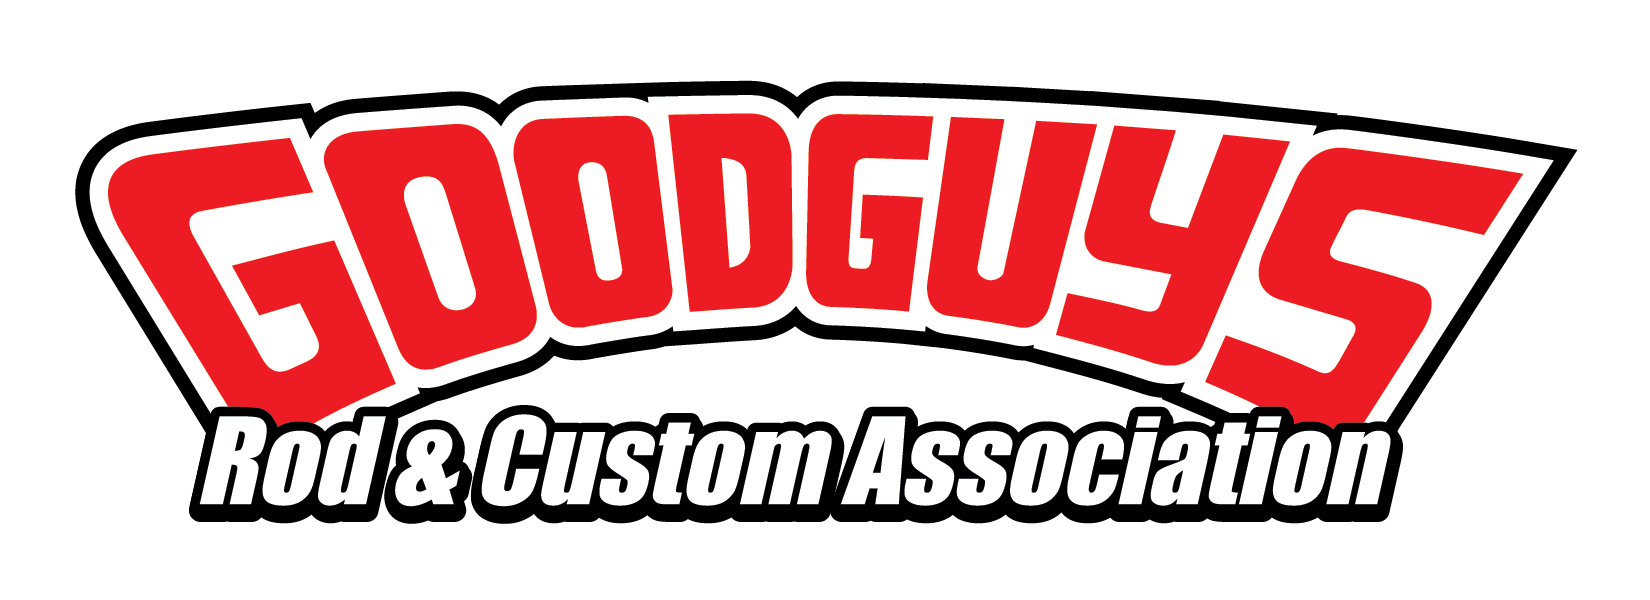 Member Spotlight: Goodguys Rod &amp; Custom Association 